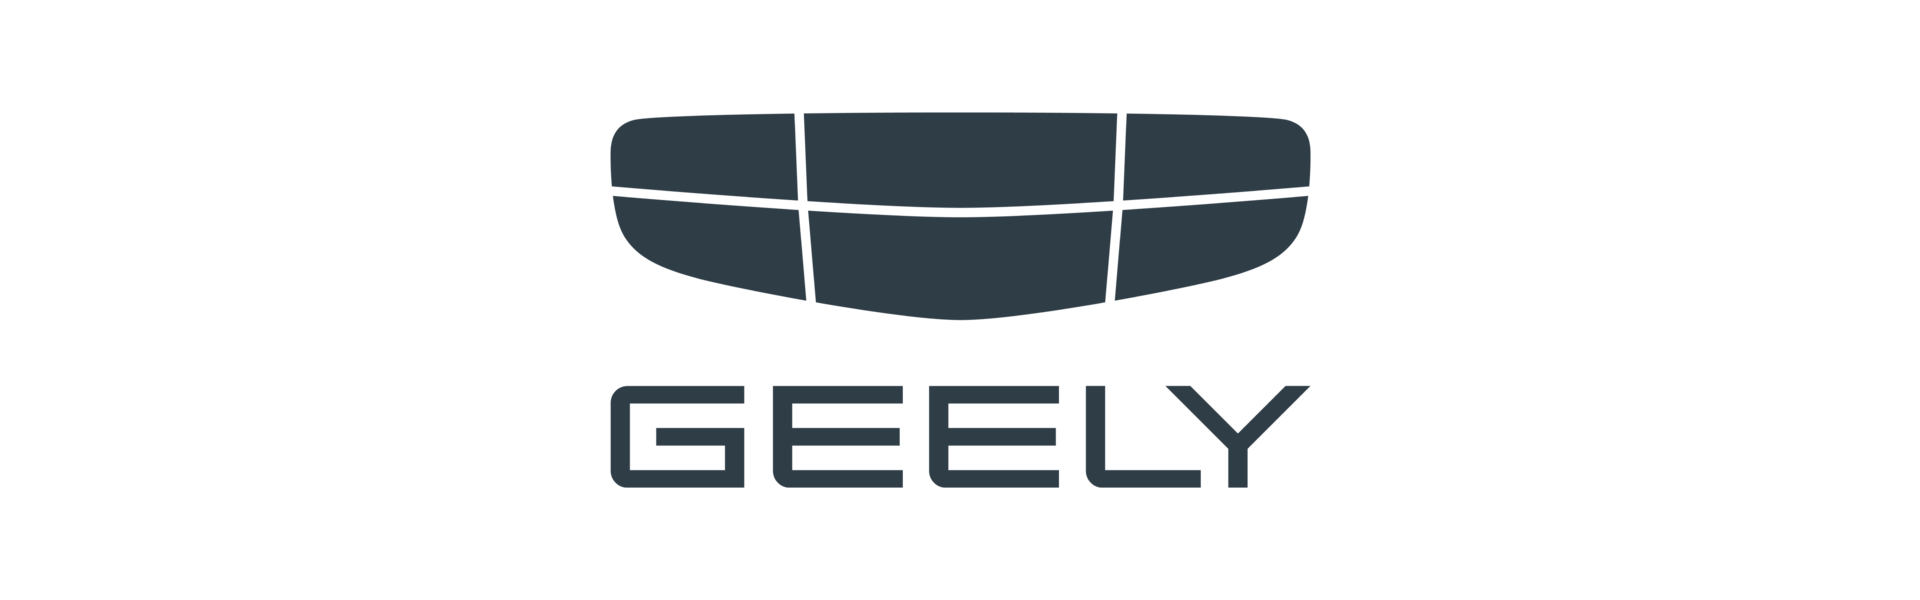 Есть вопросы?  «Официальный дилер GEELY - Тестовый дилер»